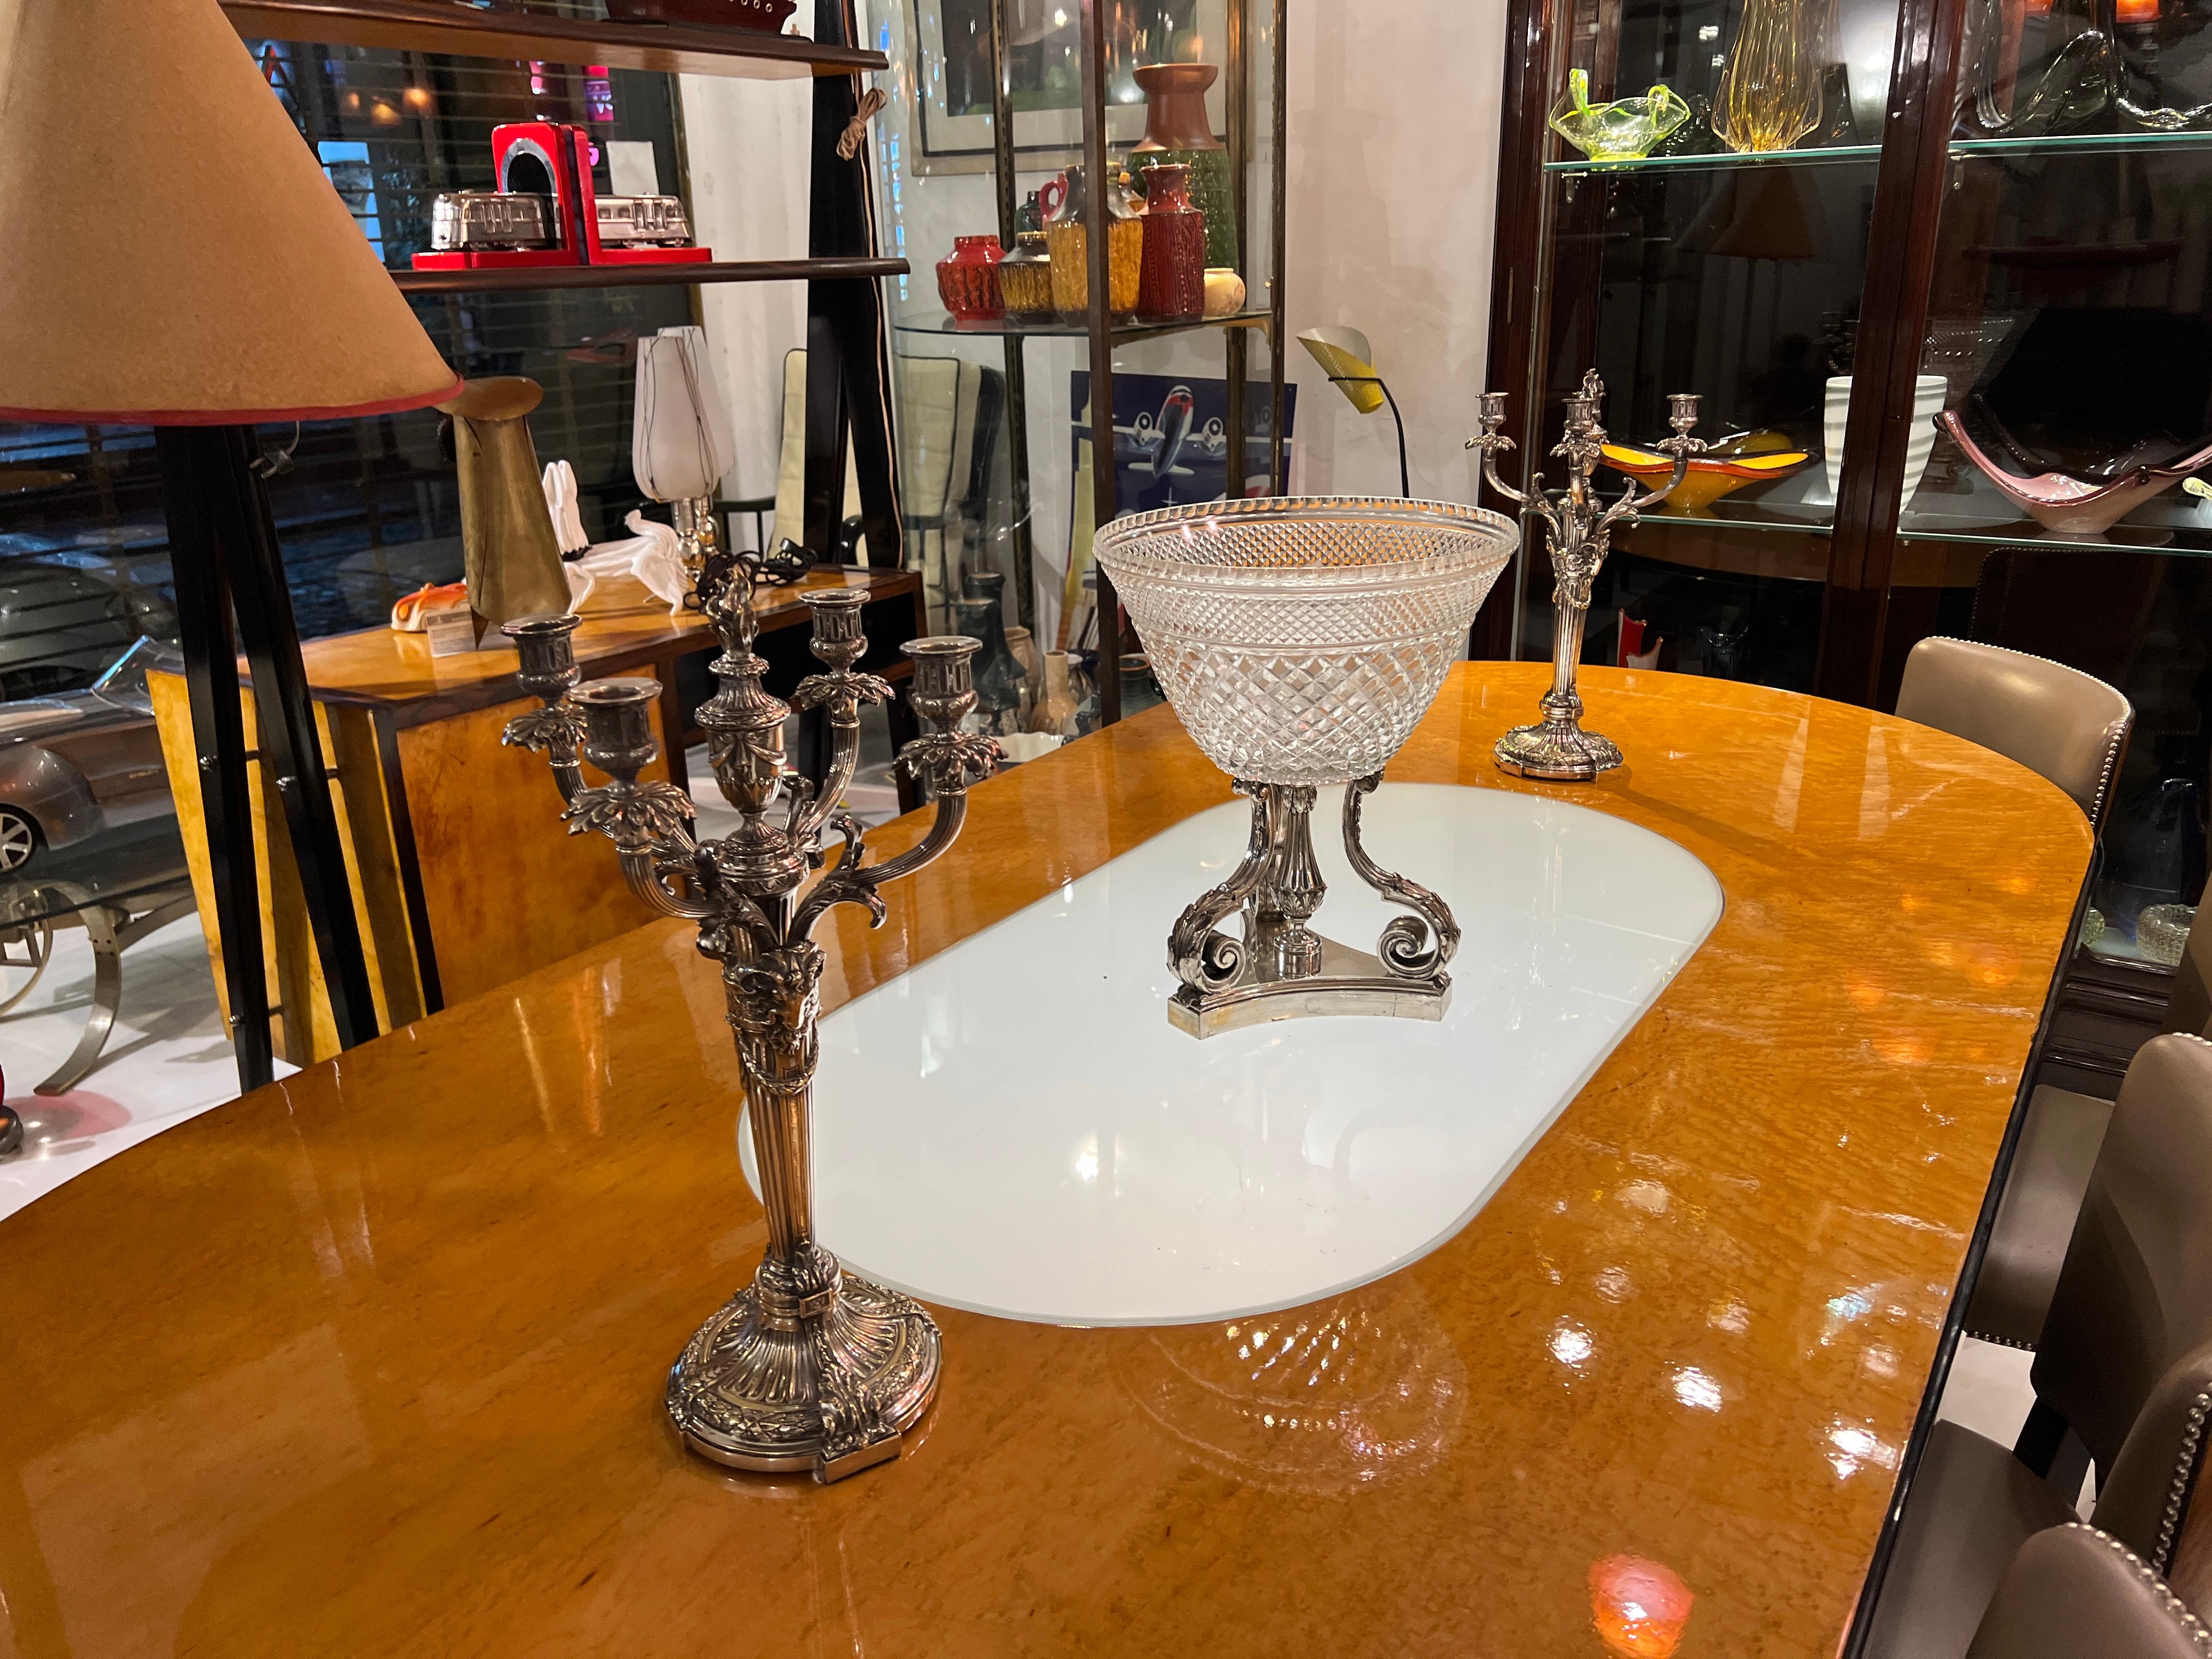 Vase
Metall: versilberte Bronze
Seit 1982 haben wir uns auf den Verkauf von Art Deco, Jugendstil und Vintage spezialisiert. Wenn Sie Fragen haben, stehen wir Ihnen gerne zur Verfügung.
Drücken Sie auf die Schaltfläche 